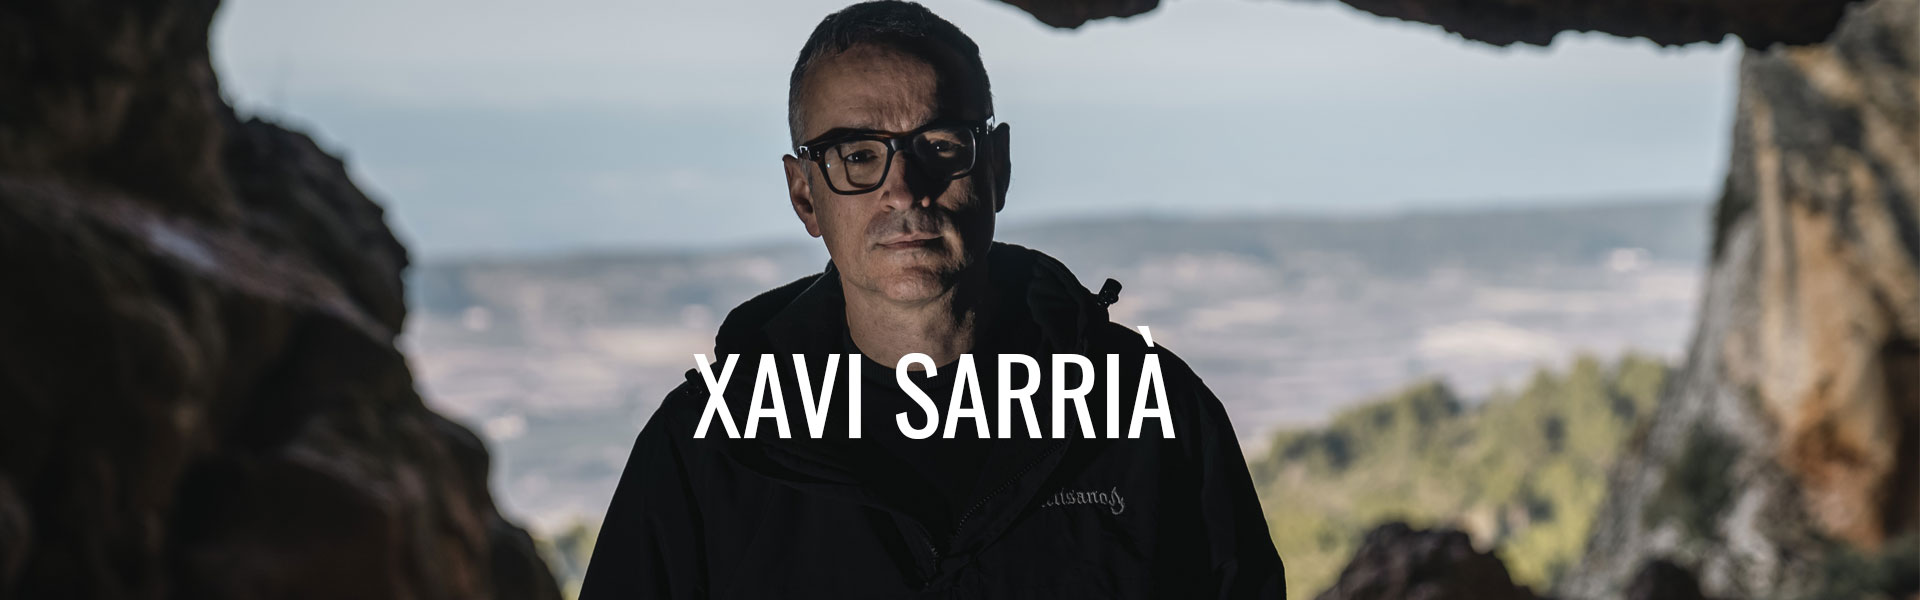 02-XAVI-SARRA-2018